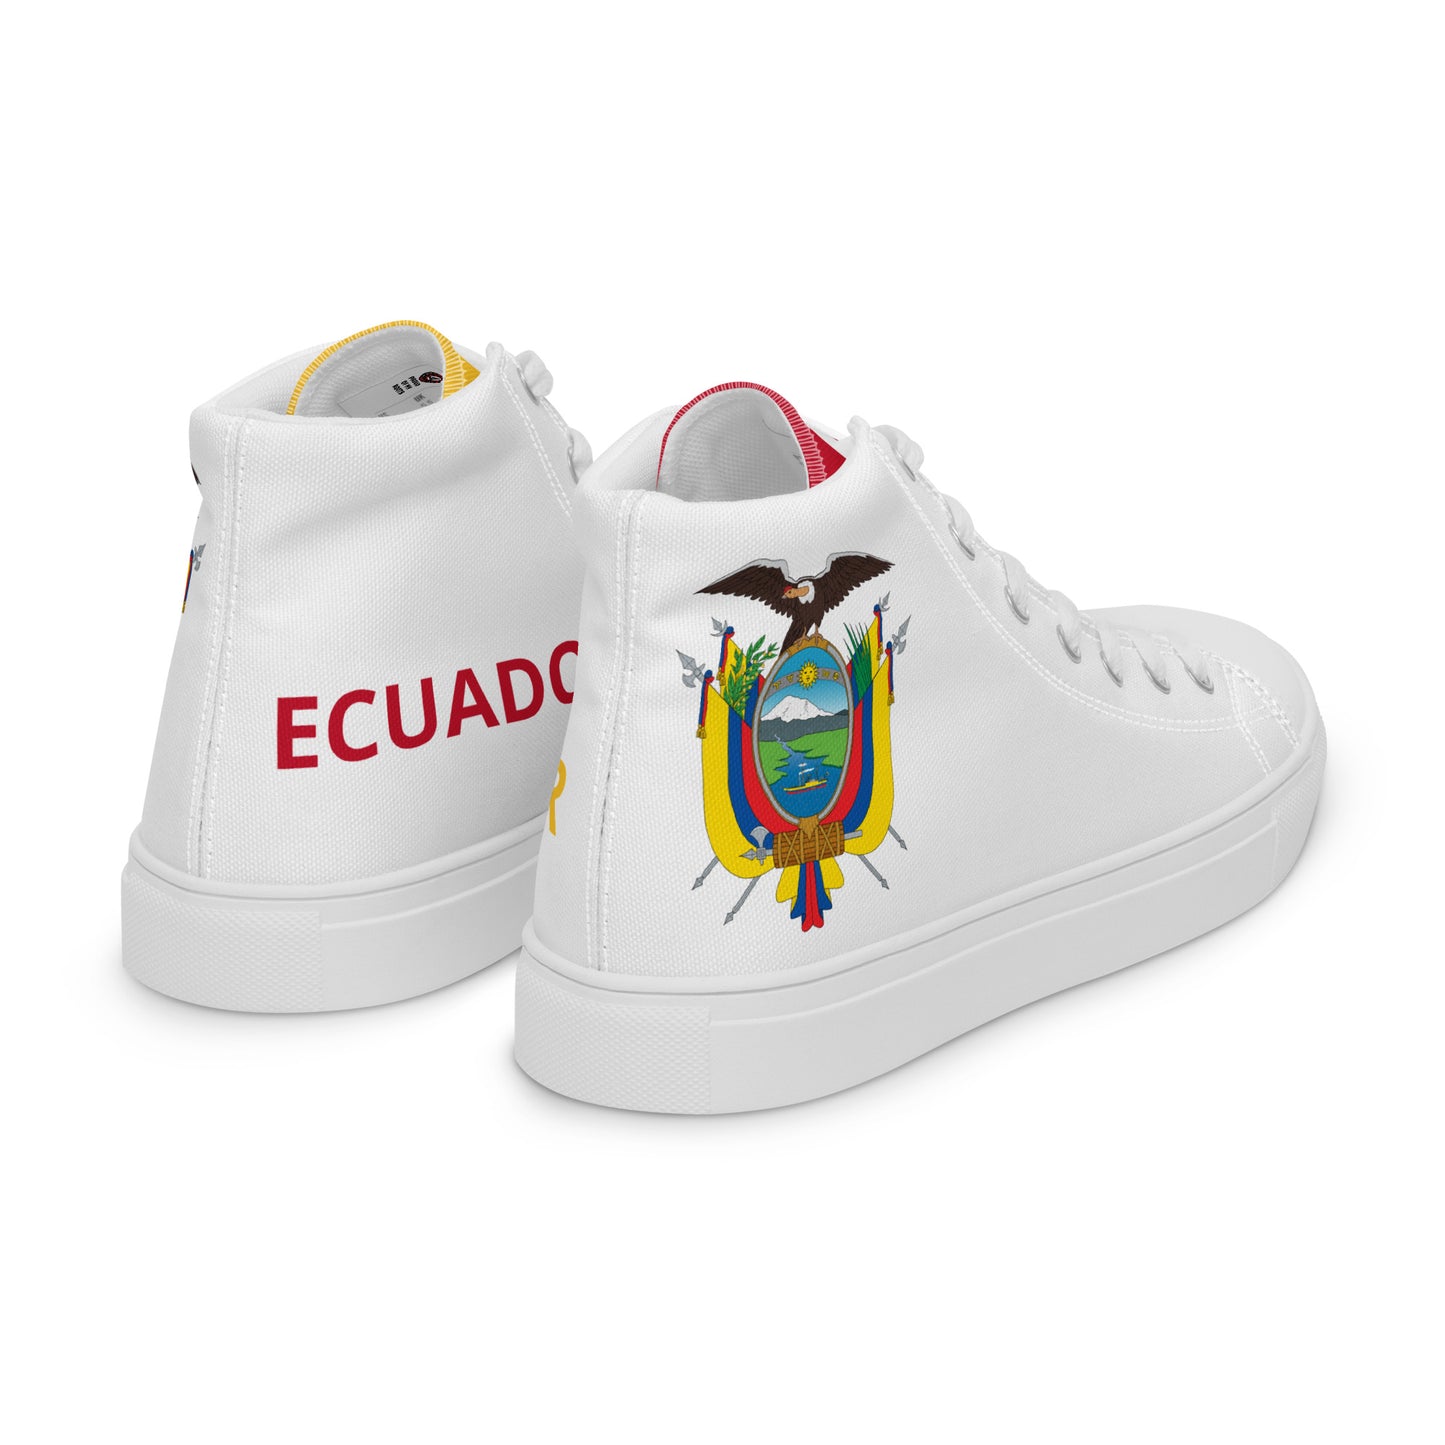 Ecuador - Hombre - Blanco - Zapatos High top